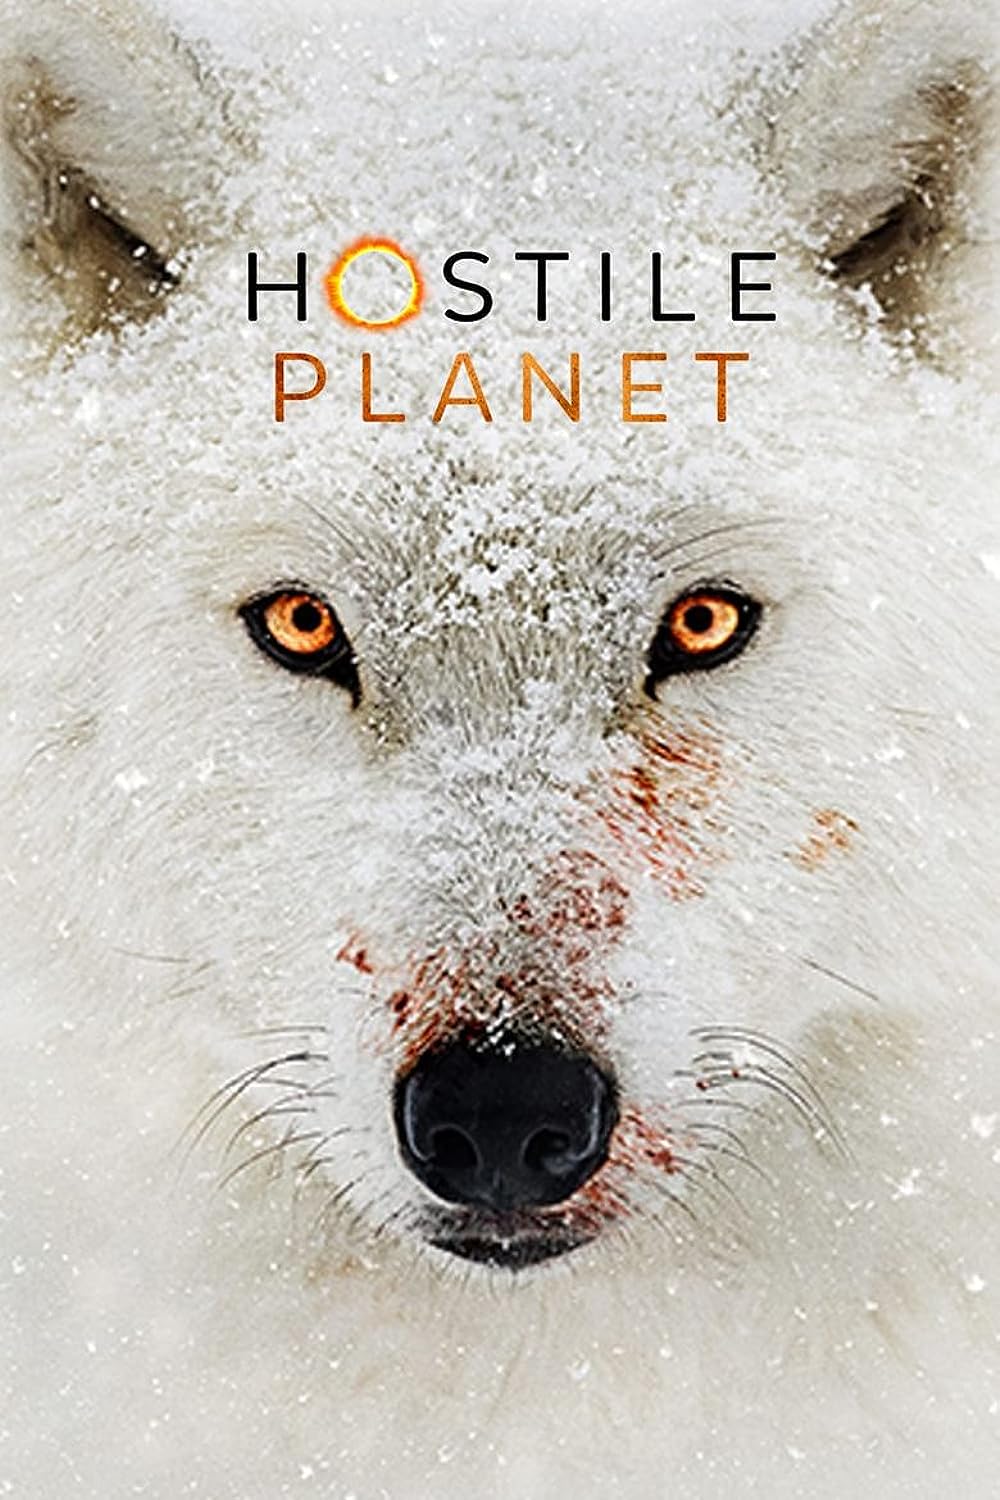 Hostile Planet S01 720p DSNP WEB-DL DDP5 1 H 264-playWEB (NL subs) seizoen 1